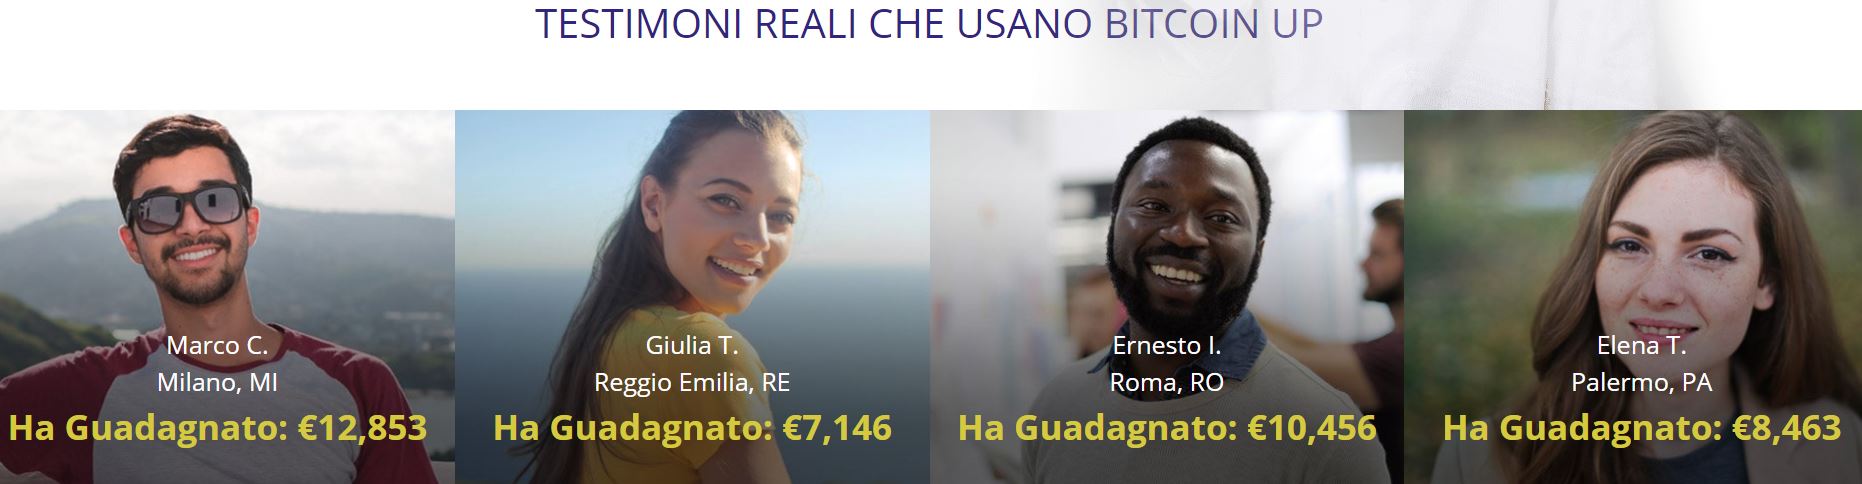 testimonianze Bitcoin up italiano